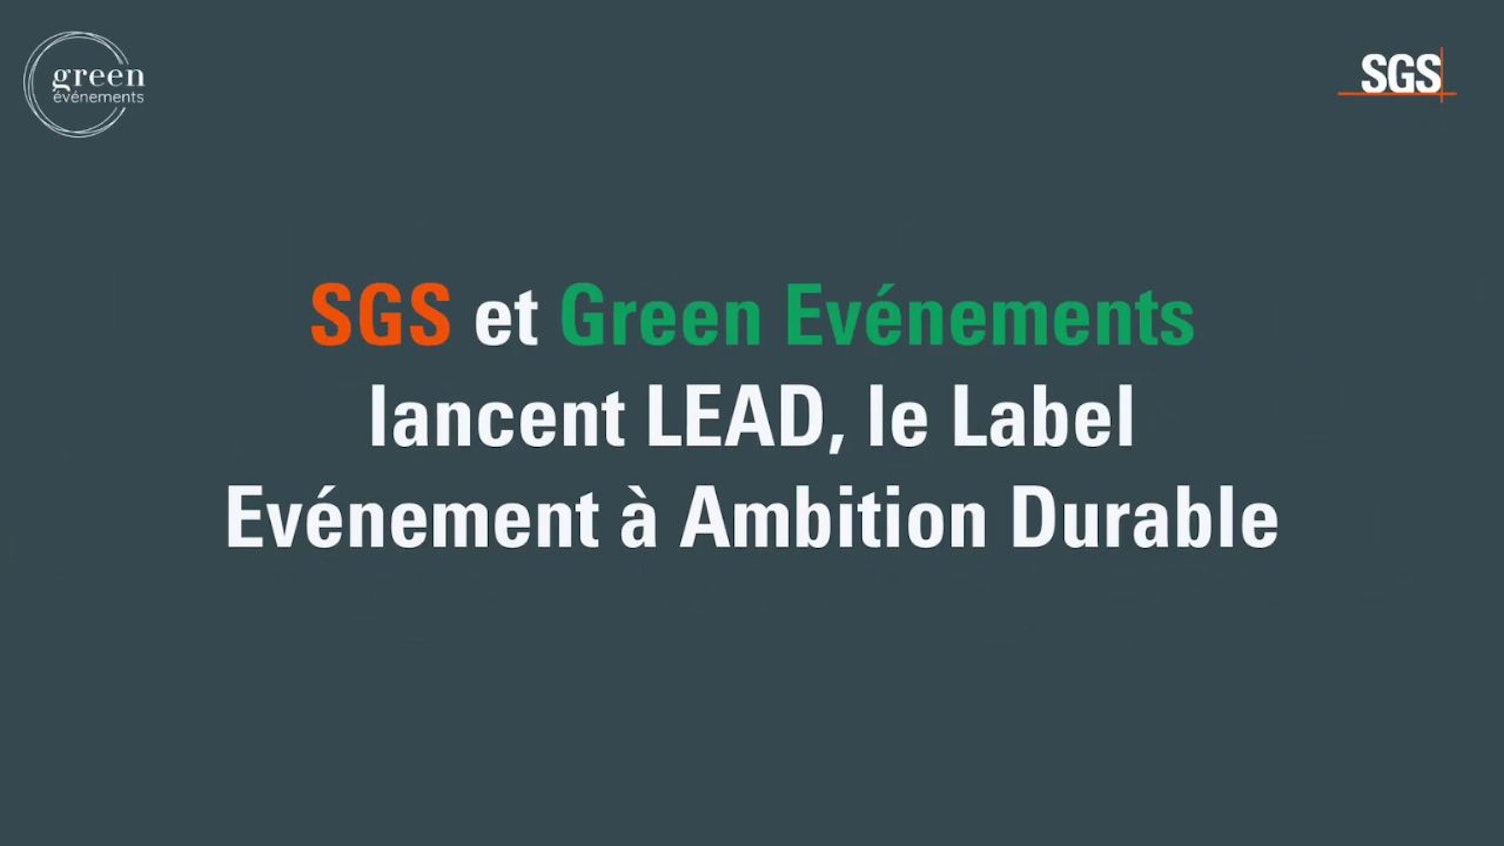 SGS et Green Evenements creent LEAD le Label Evenement a Ambition Durable